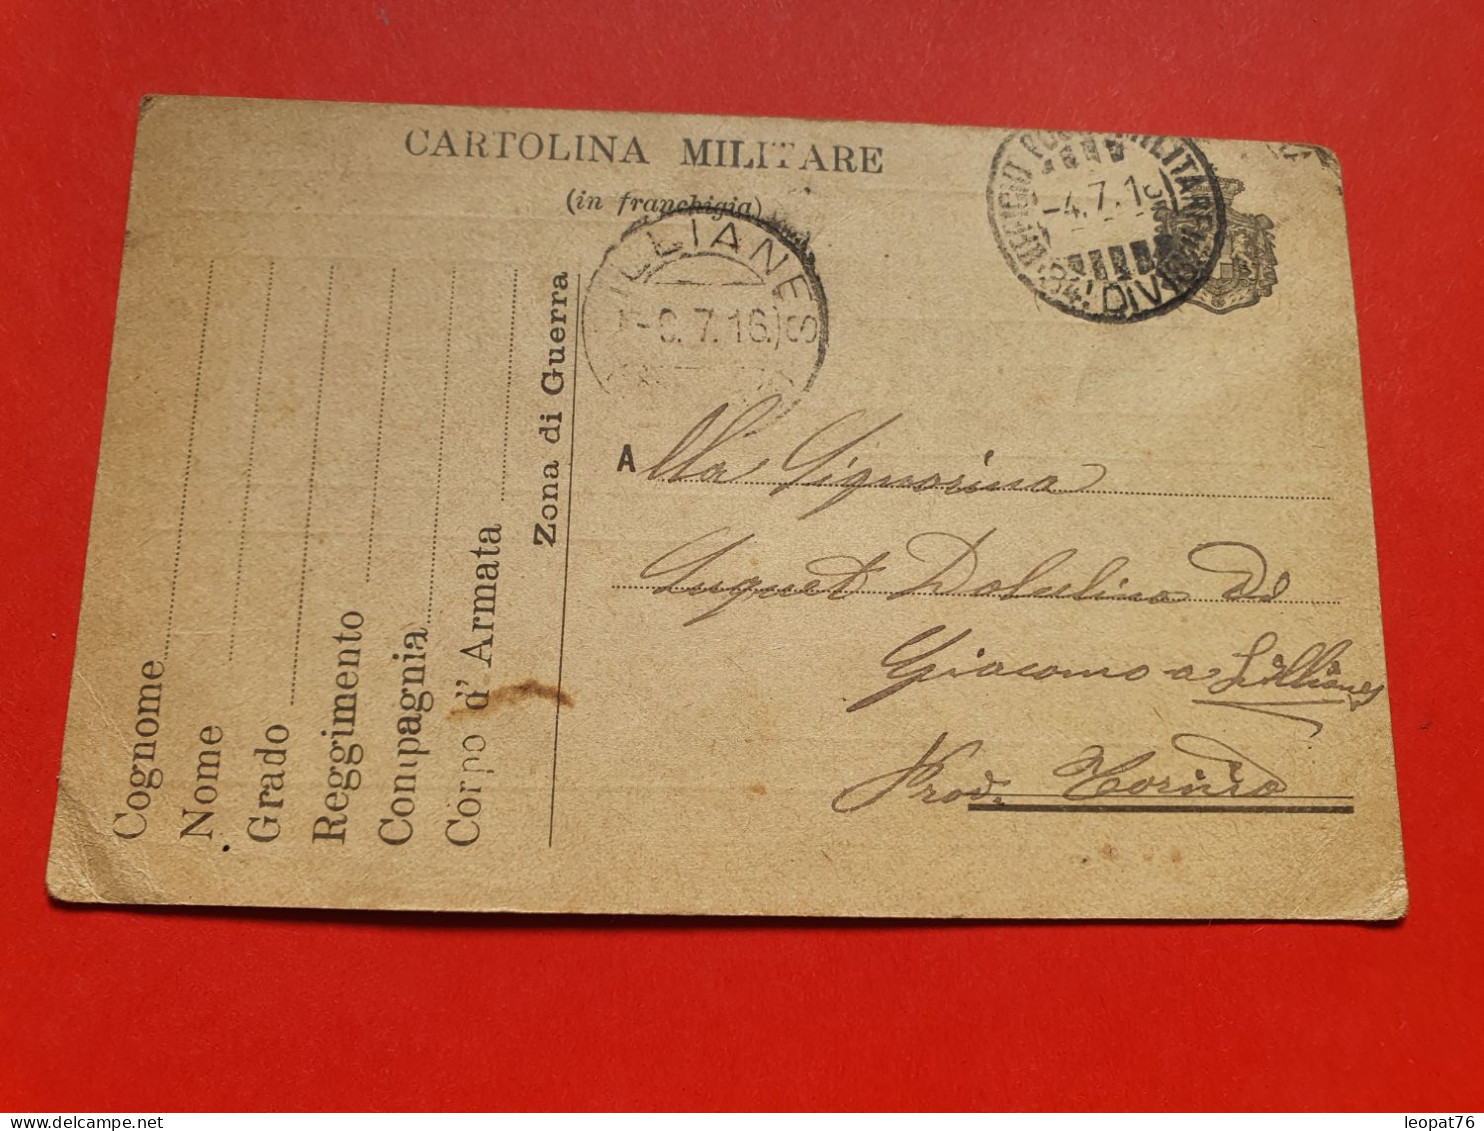 Italie - Carte FM Voyagé En 1916 - Réf 1663 - Militaire Post (PM)